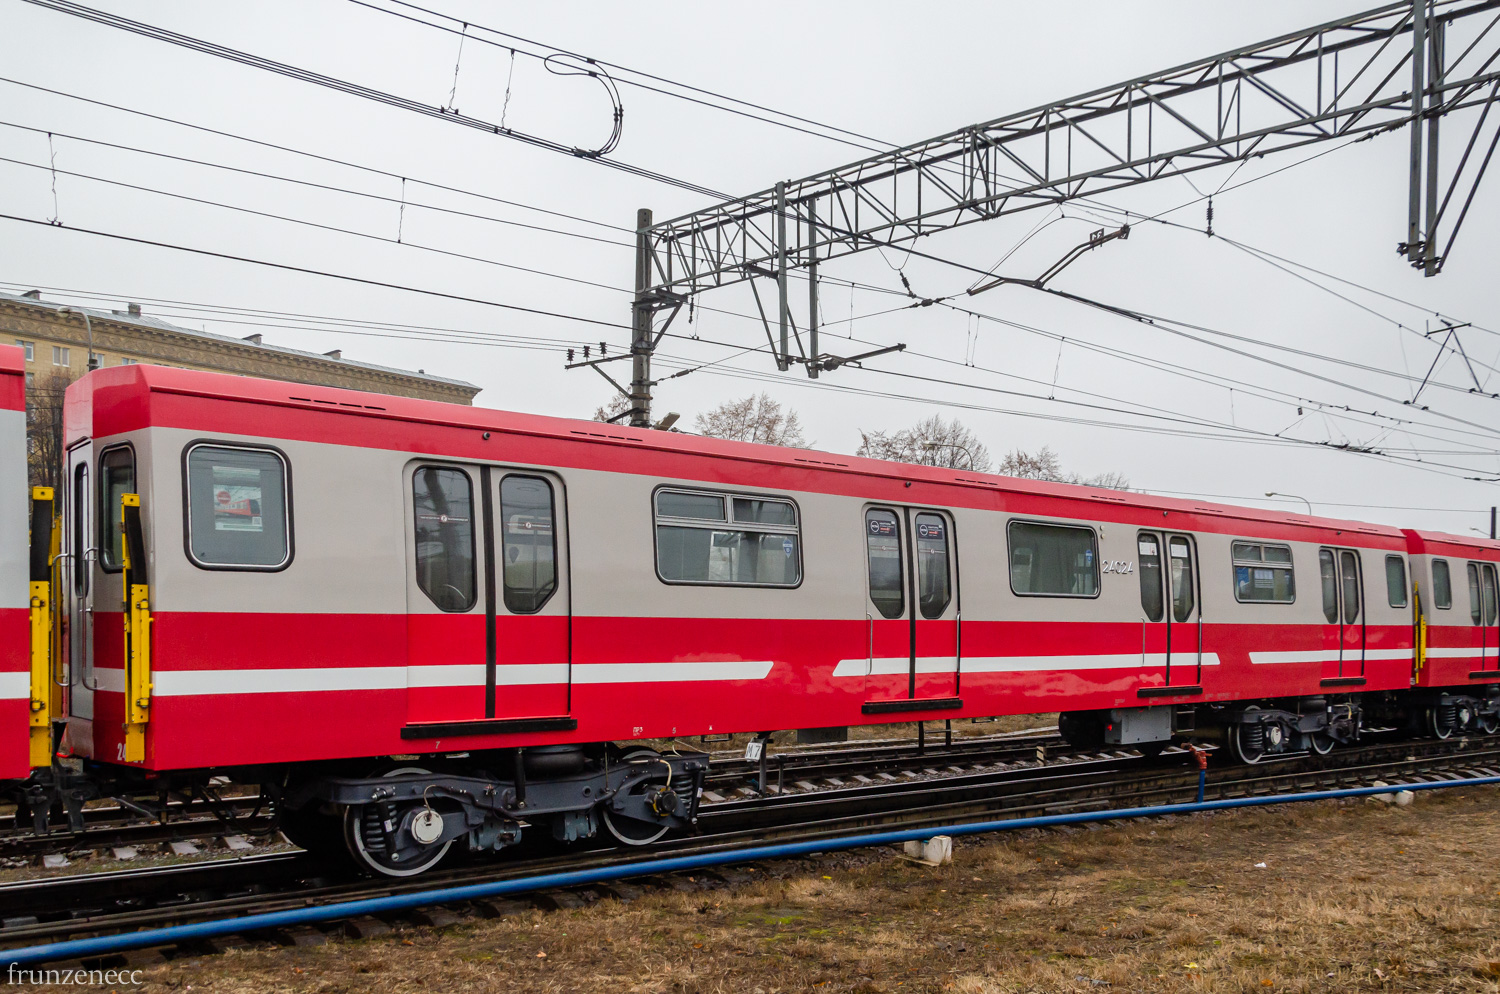 Saint-Petersburg, 81-724.1 (MVM) # 24024; Saint-Petersburg — Metro — Transport of subway cars by railway